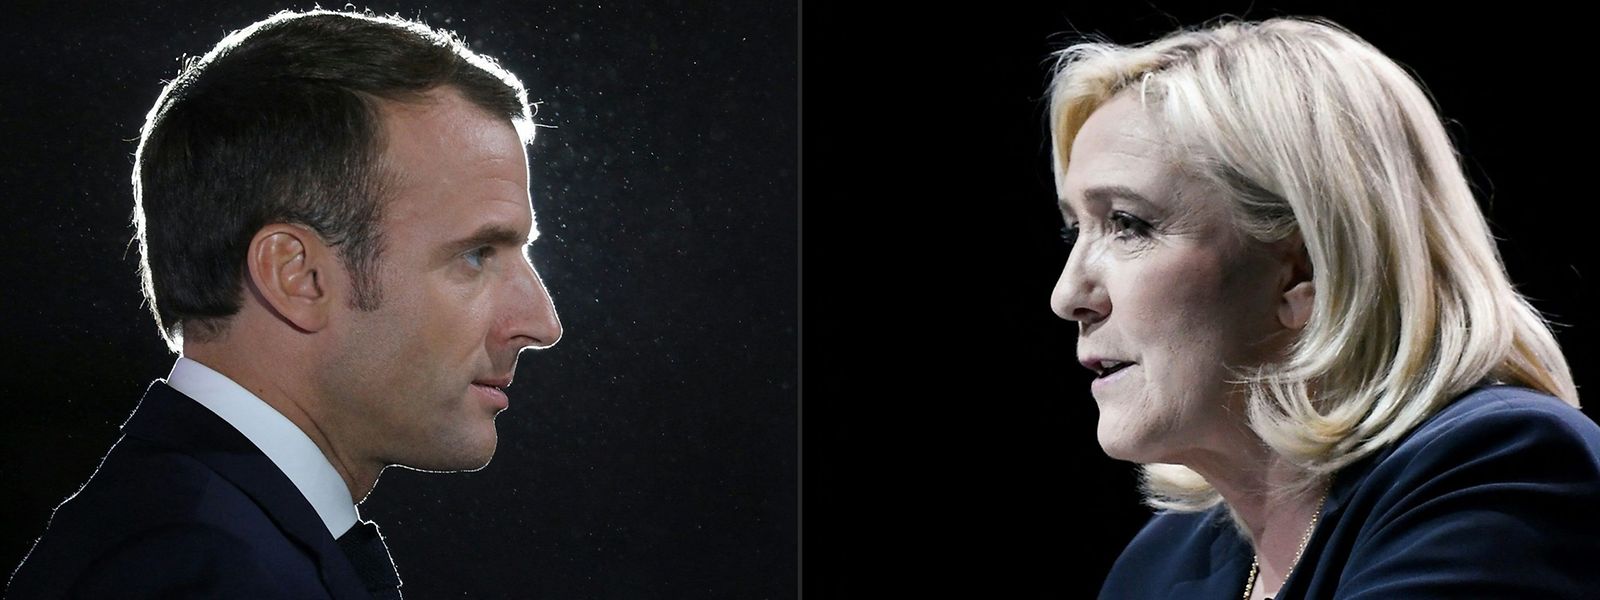 Wer gewinnt am Sonntag die Stichwahl: Emmanuel Macron oder Marine Le Pen?